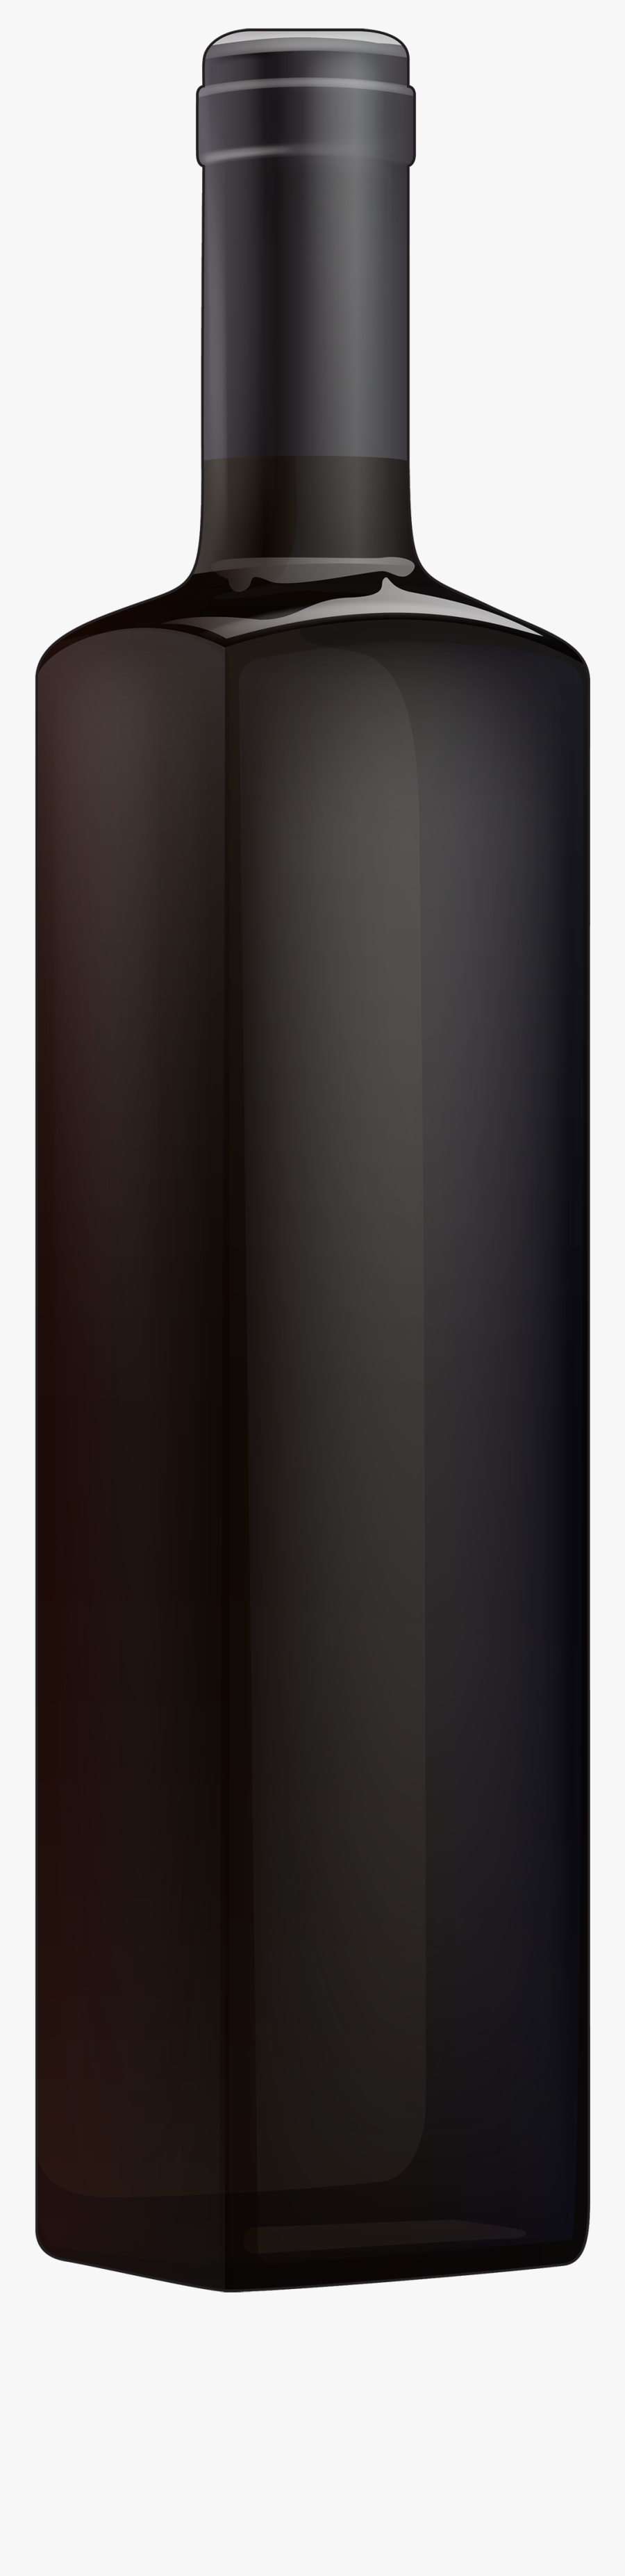 Black Bottle Png Clipart - Wood, Transparent Clipart